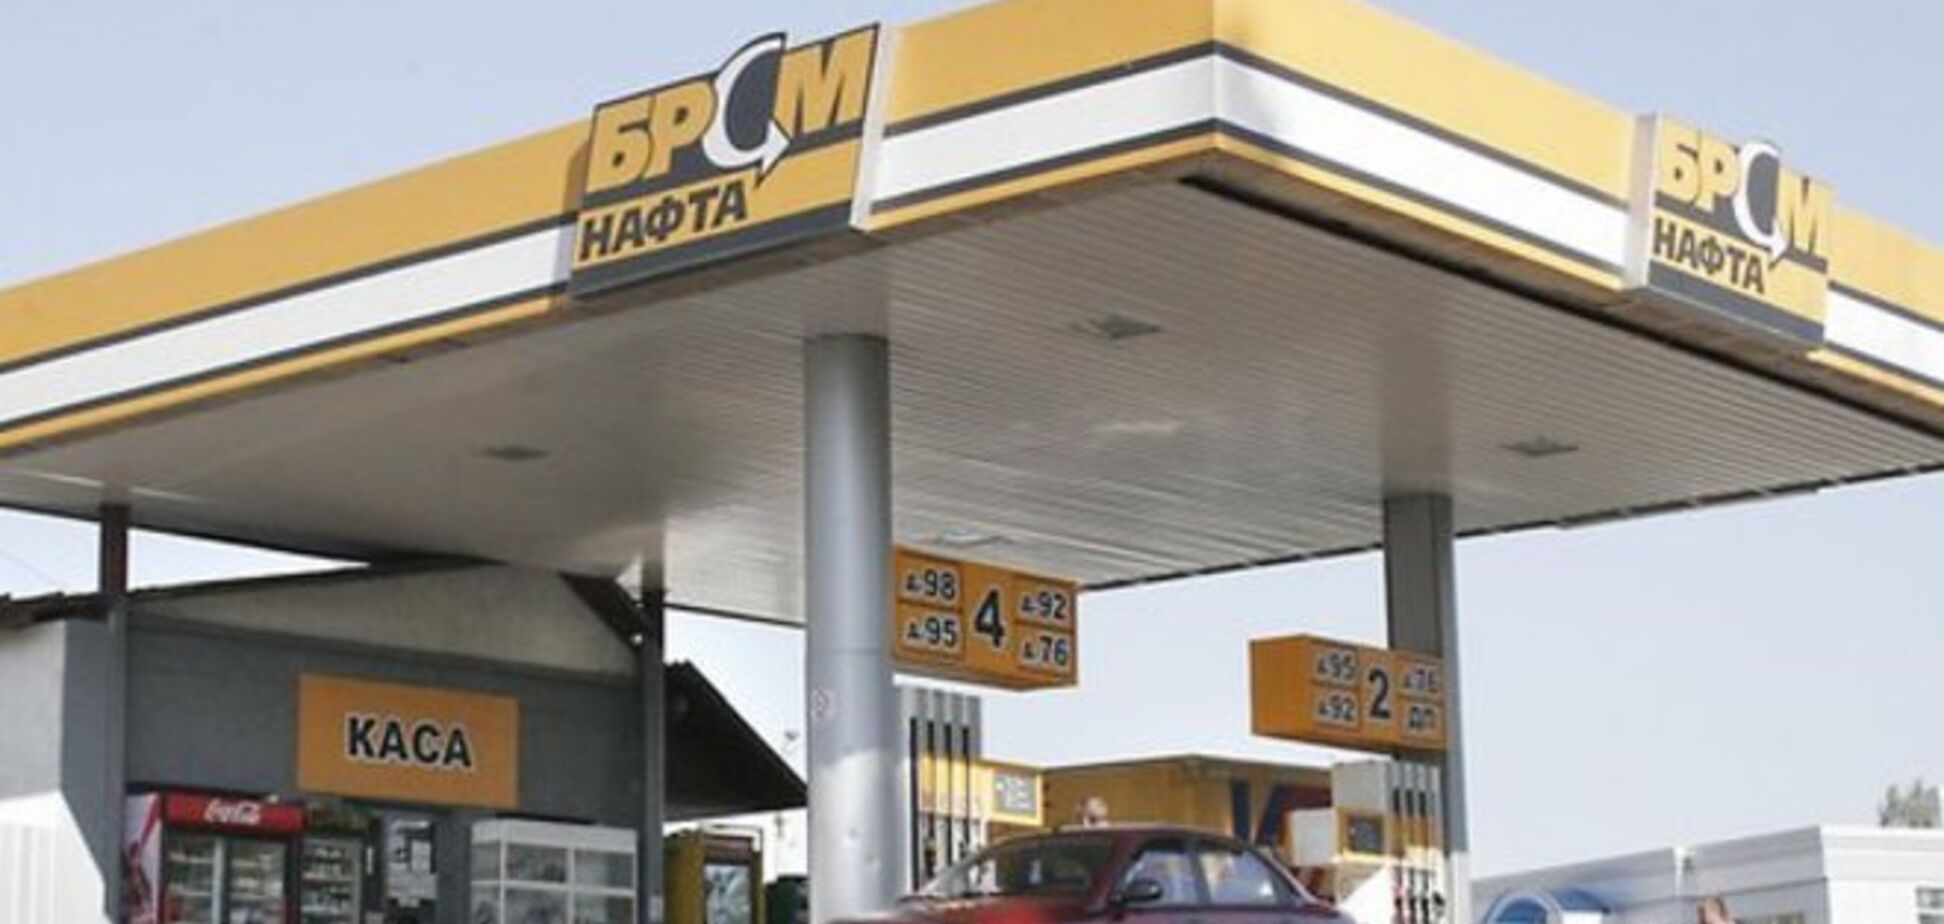 Результаты исследования качества топлива сети 'БРСМ-Нафта' переданы для изучения в МВД